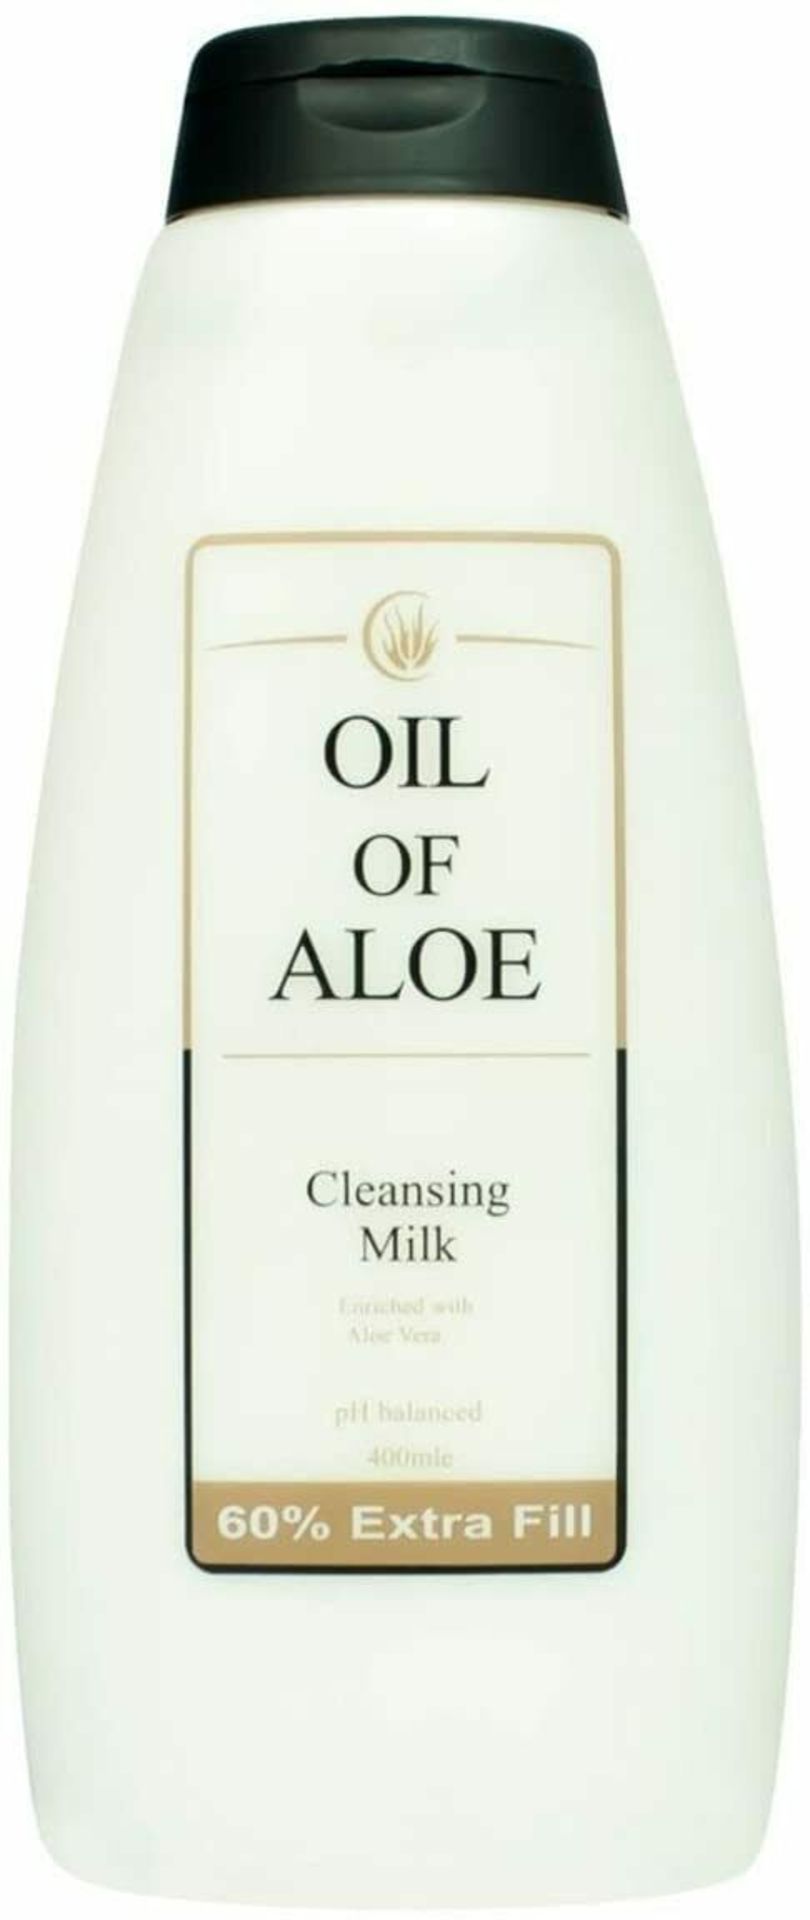 12 x Oil of Aloe Cleansing Milk RRP £6.34 ea